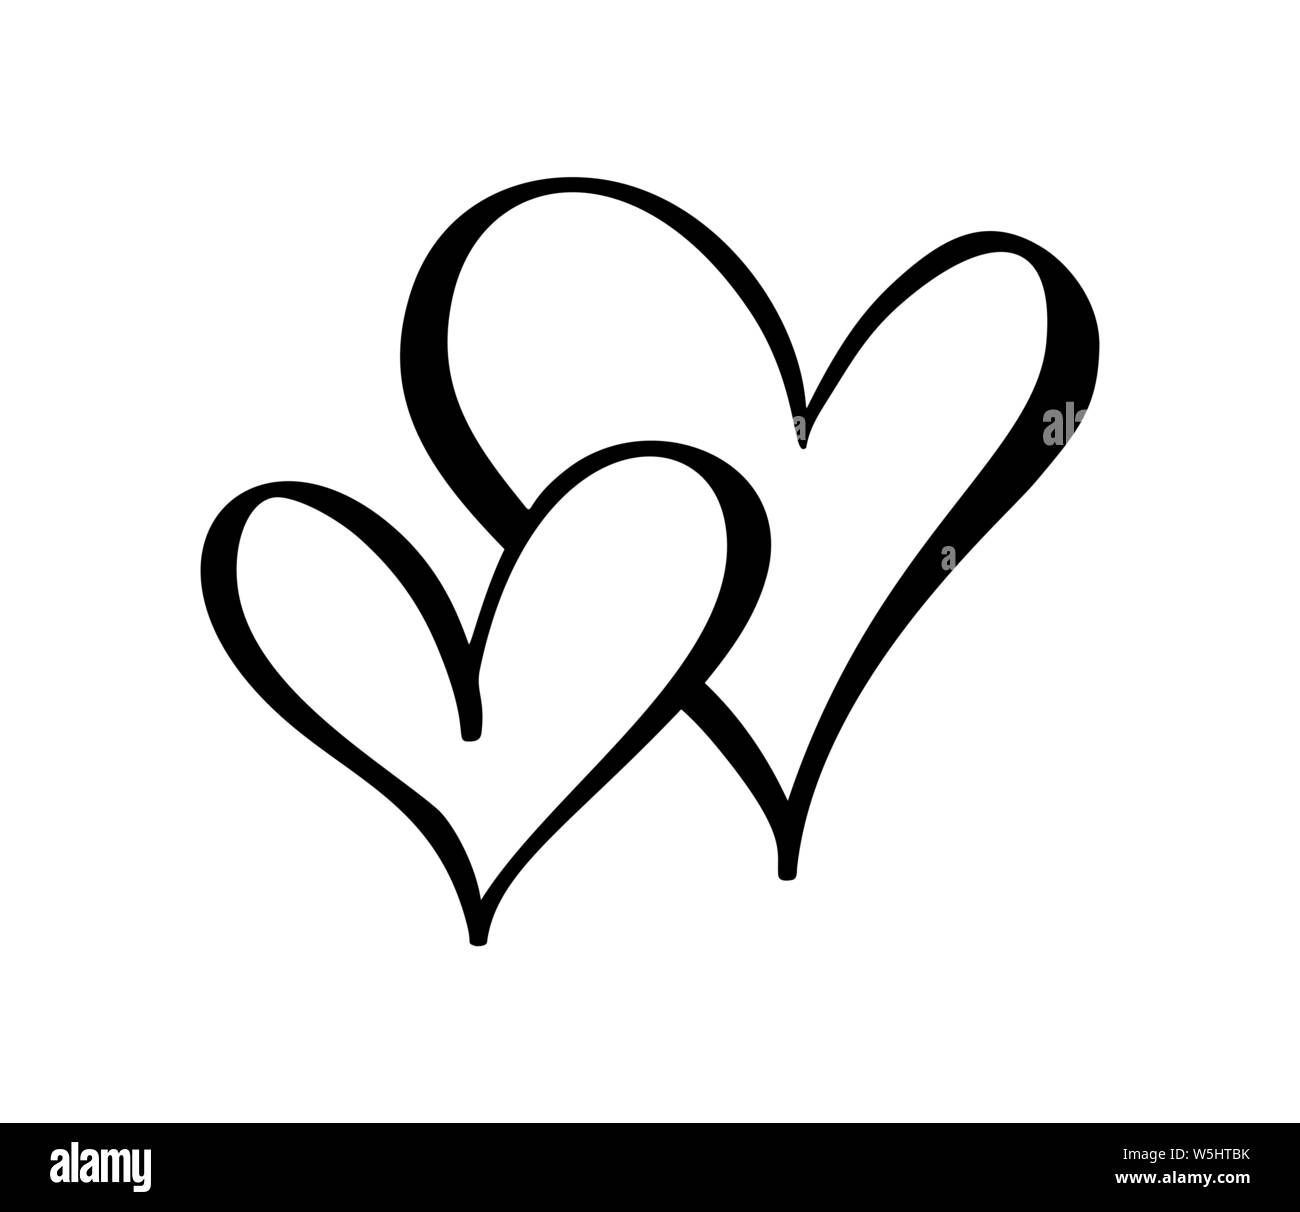 Vector Black Hearts gợi nhớ đến cảm giác mạnh mẽ của tình yêu đích thực. Hãy tìm hiểu chi tiết từng chiếc trái tim màu đen bí ẩn trong bức tranh đầy cảm xúc này.